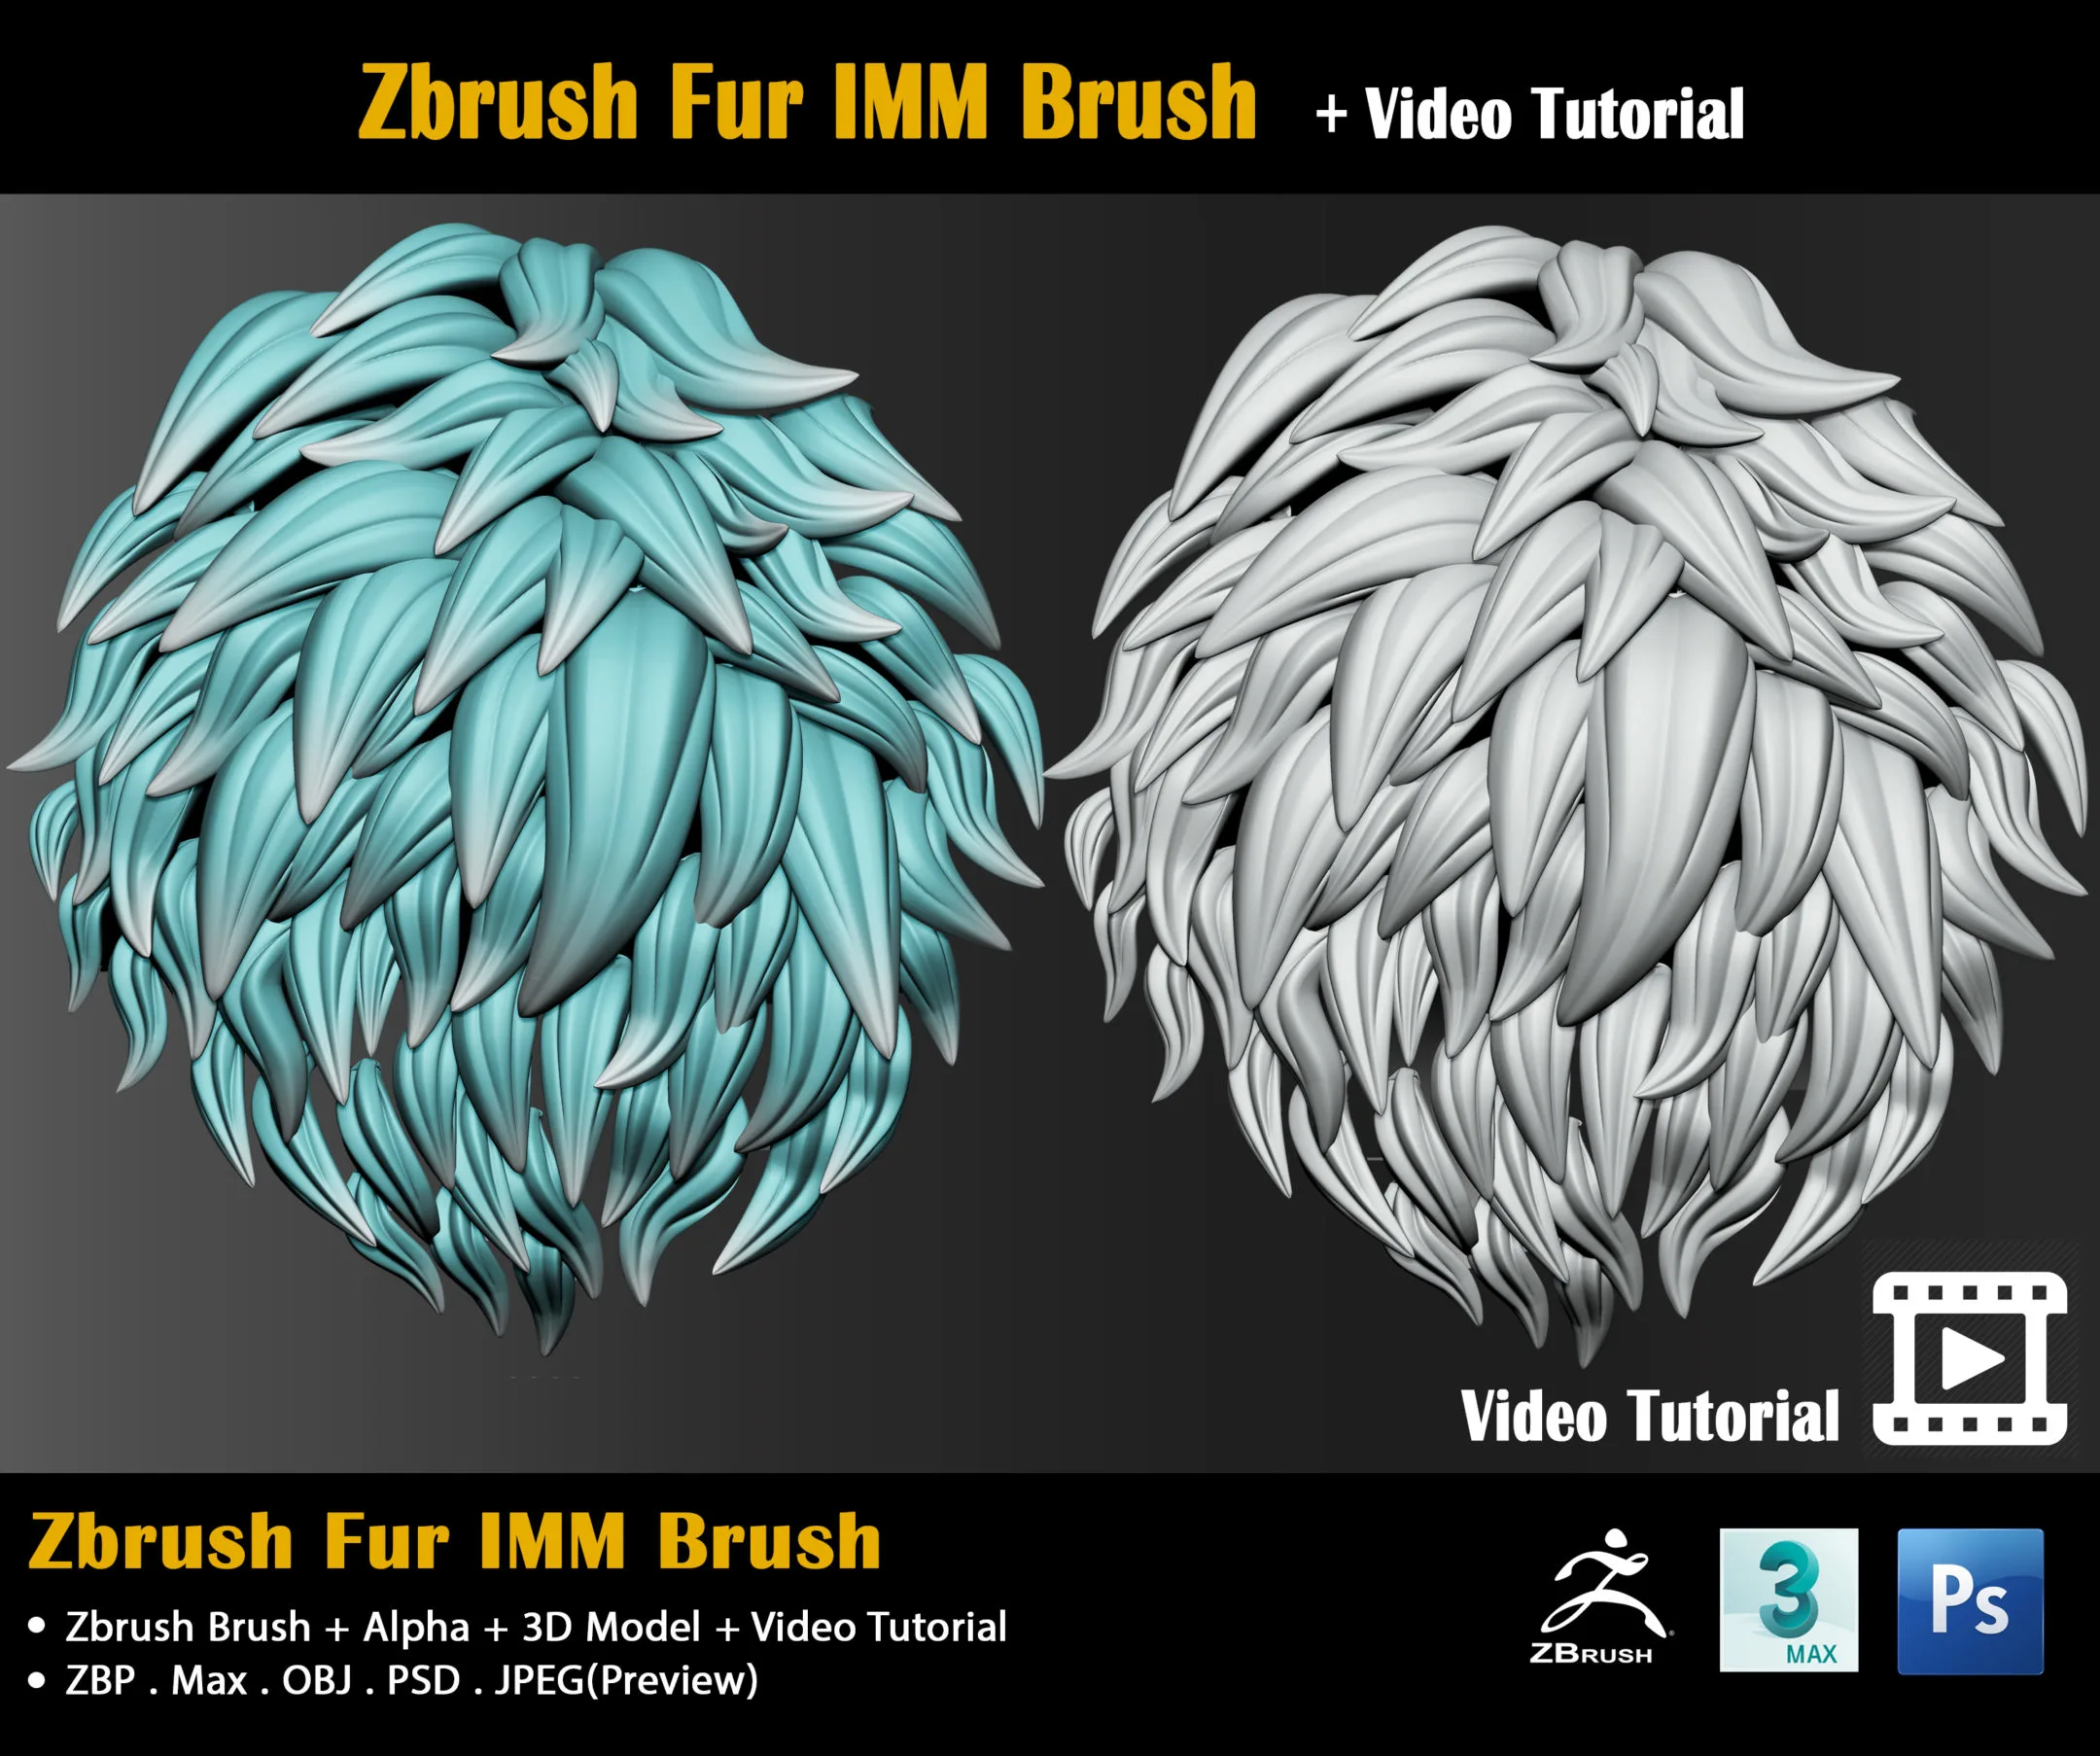 Zbrush Fur IMM Brush + Video Tutorial